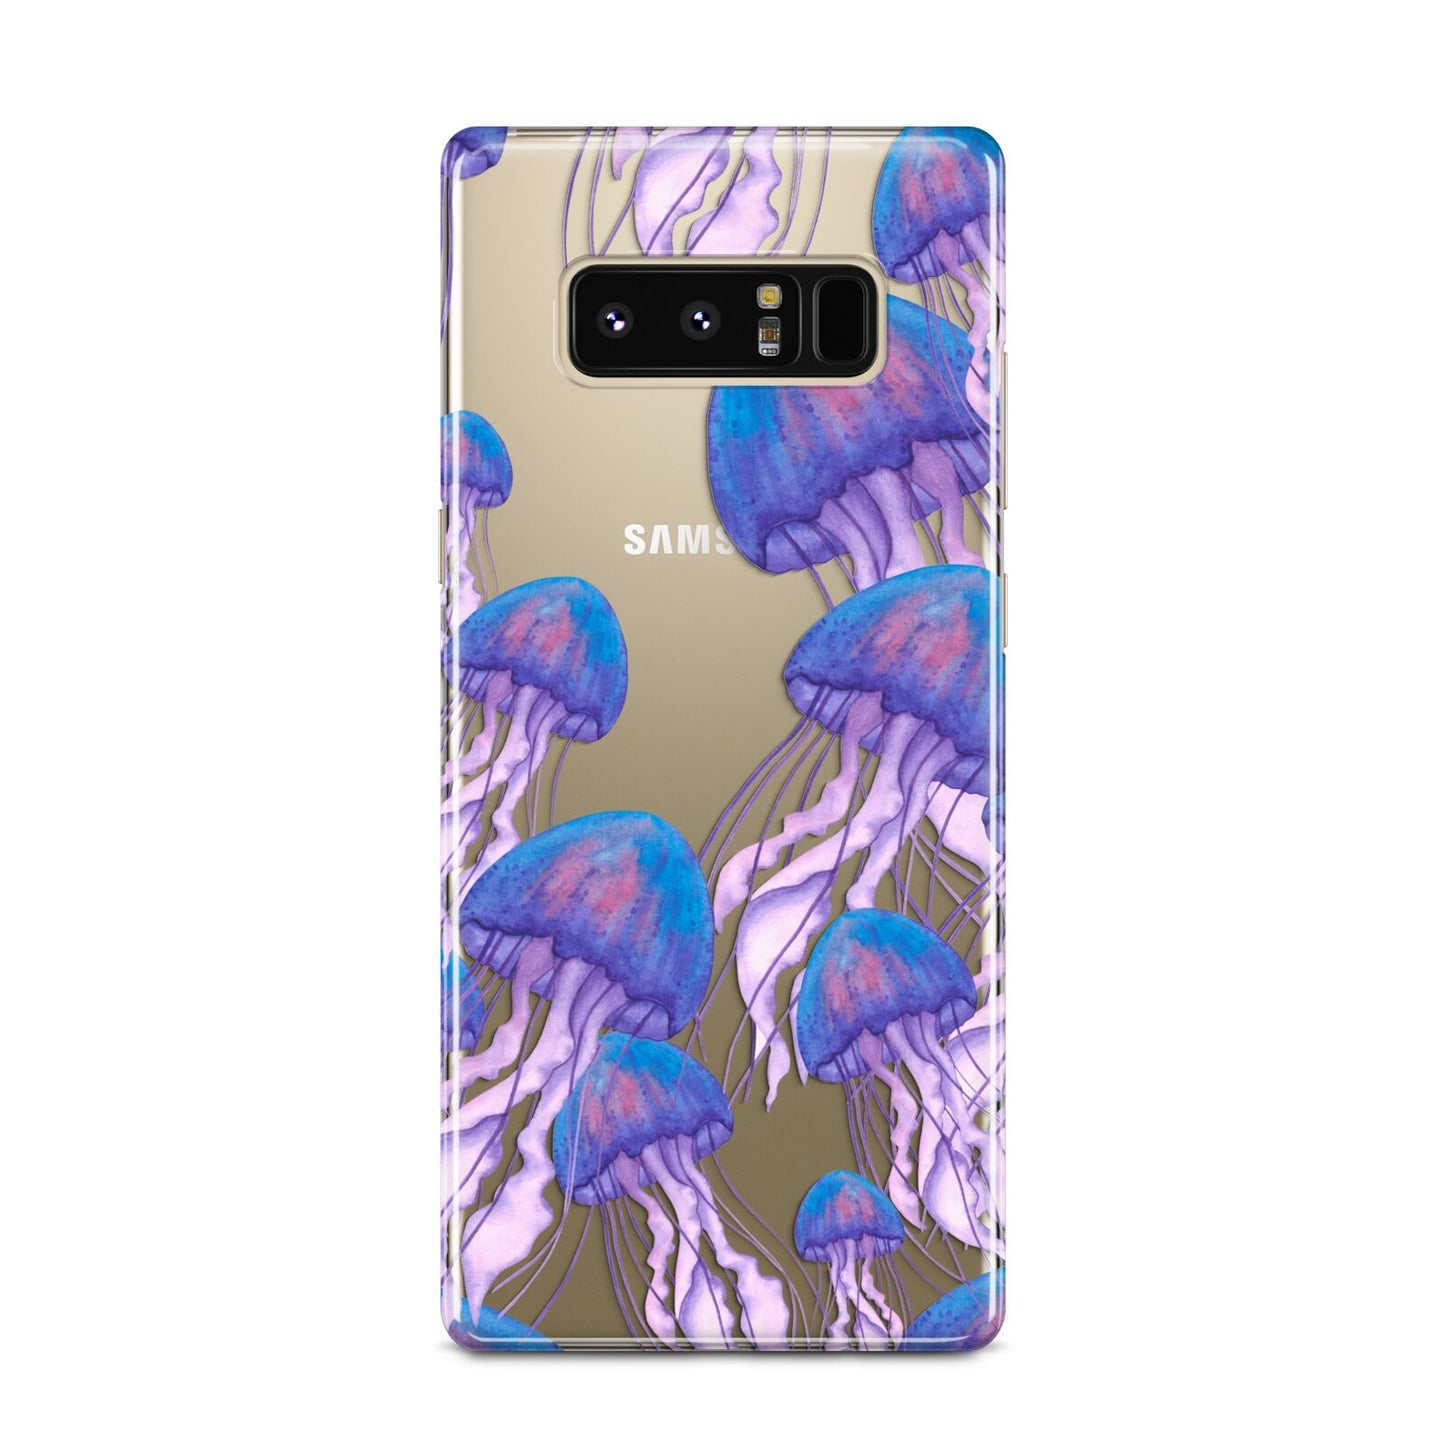 Jellyfish Samsung Galaxy Note 8 Case